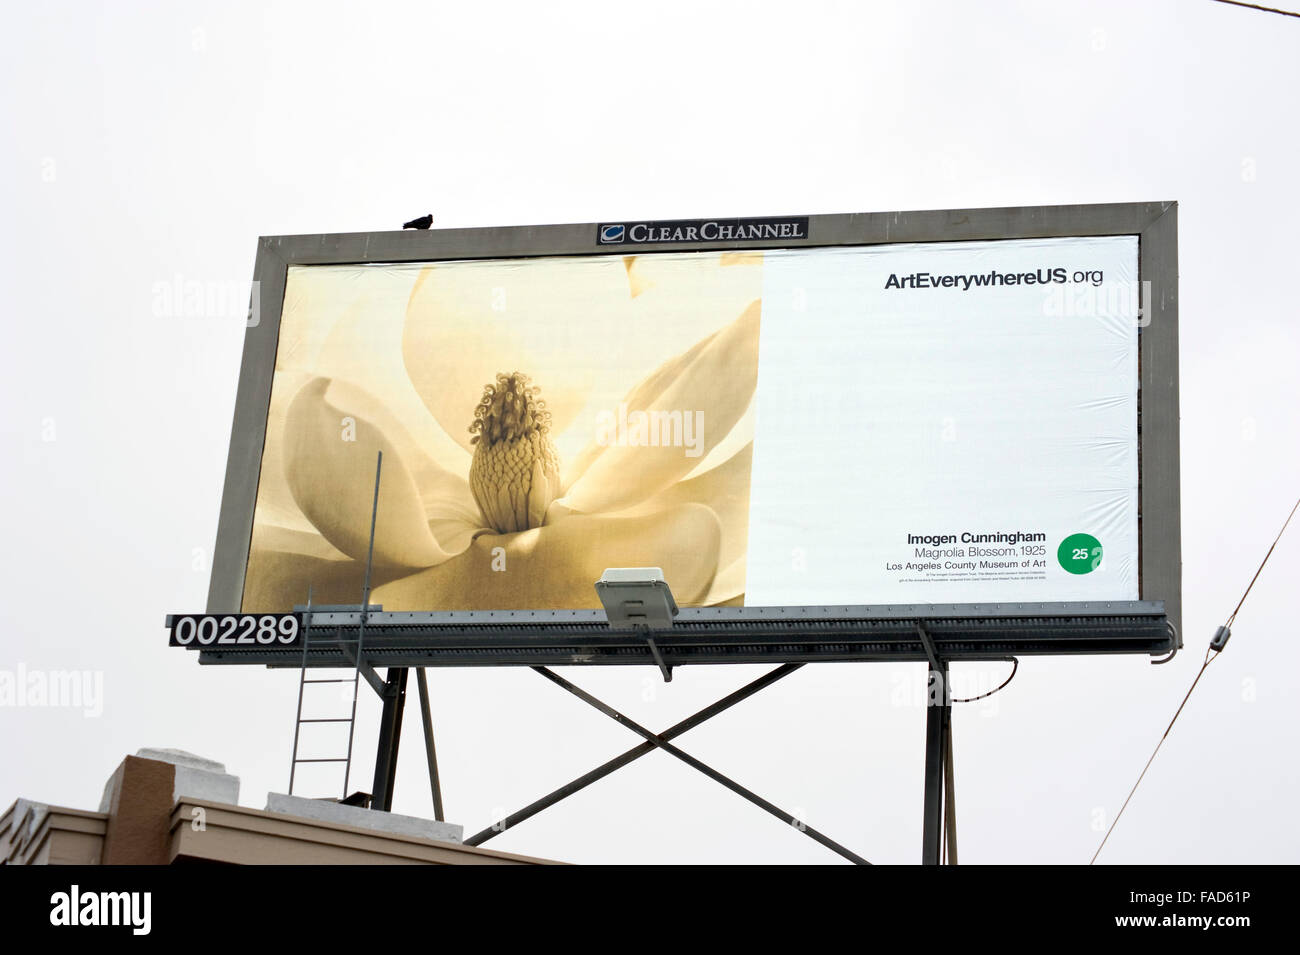 Un Imogen Cunningham fotografia compare su una pubblicità outdoor billboard in Oakland, CA durante l'arte ovunque evento. Foto Stock